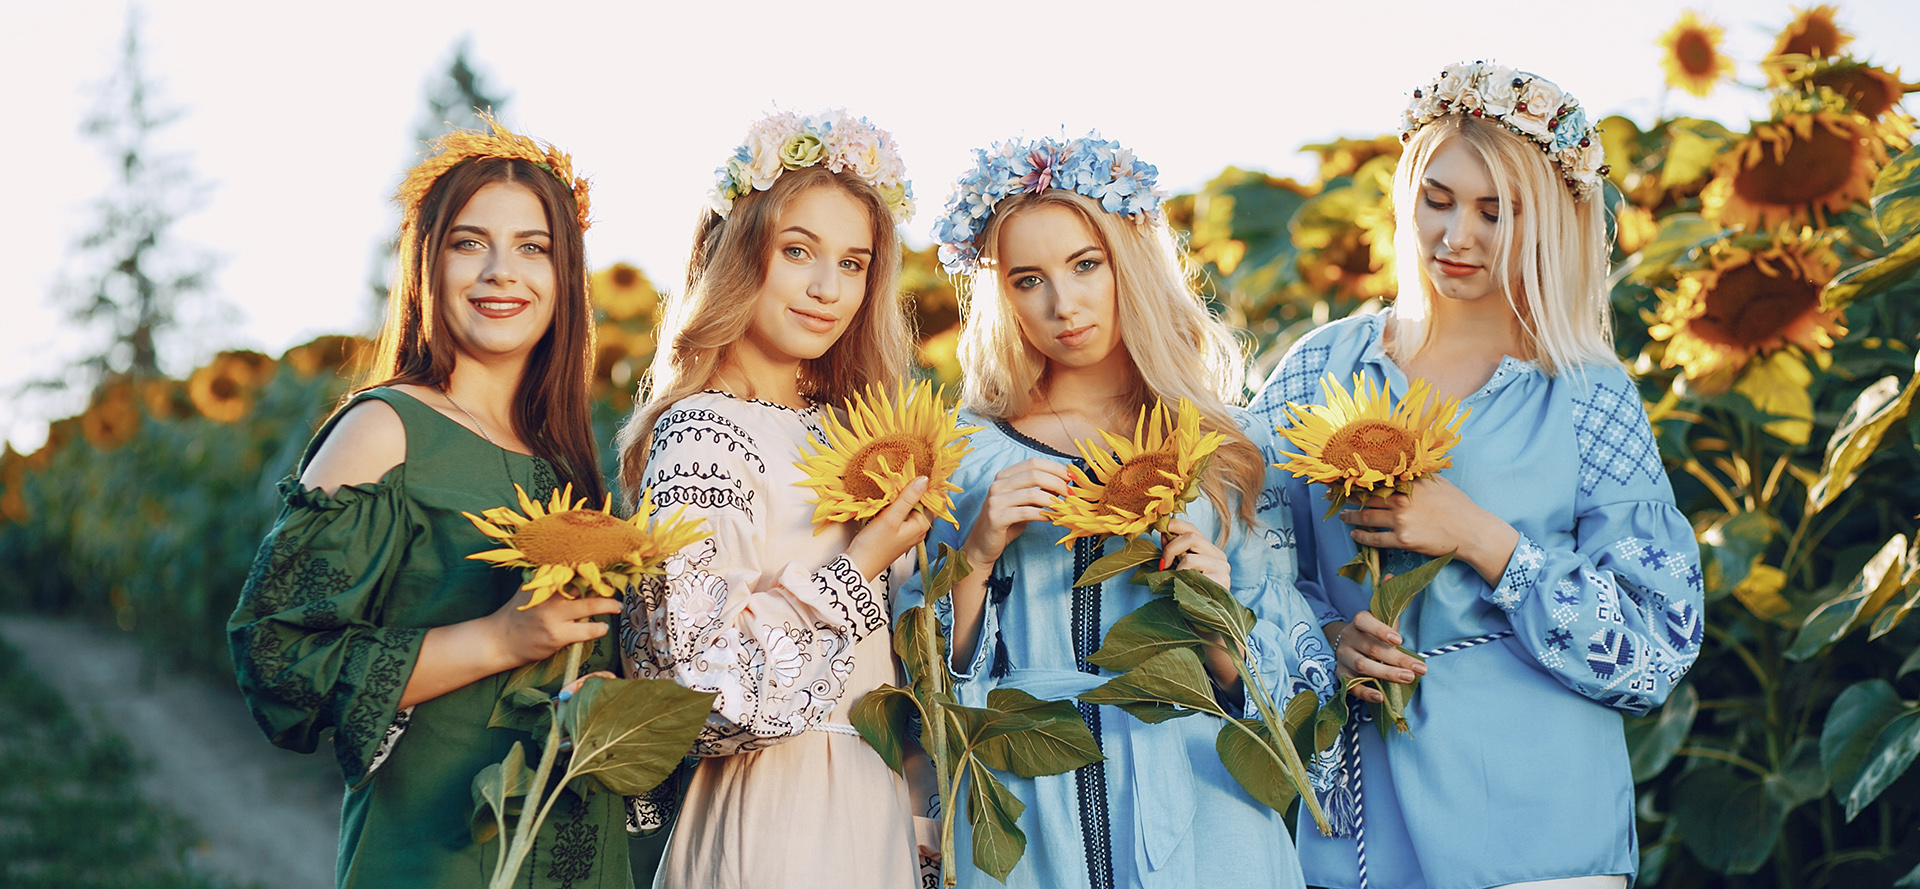 Belle donne ucraine single con girasoli in mano.